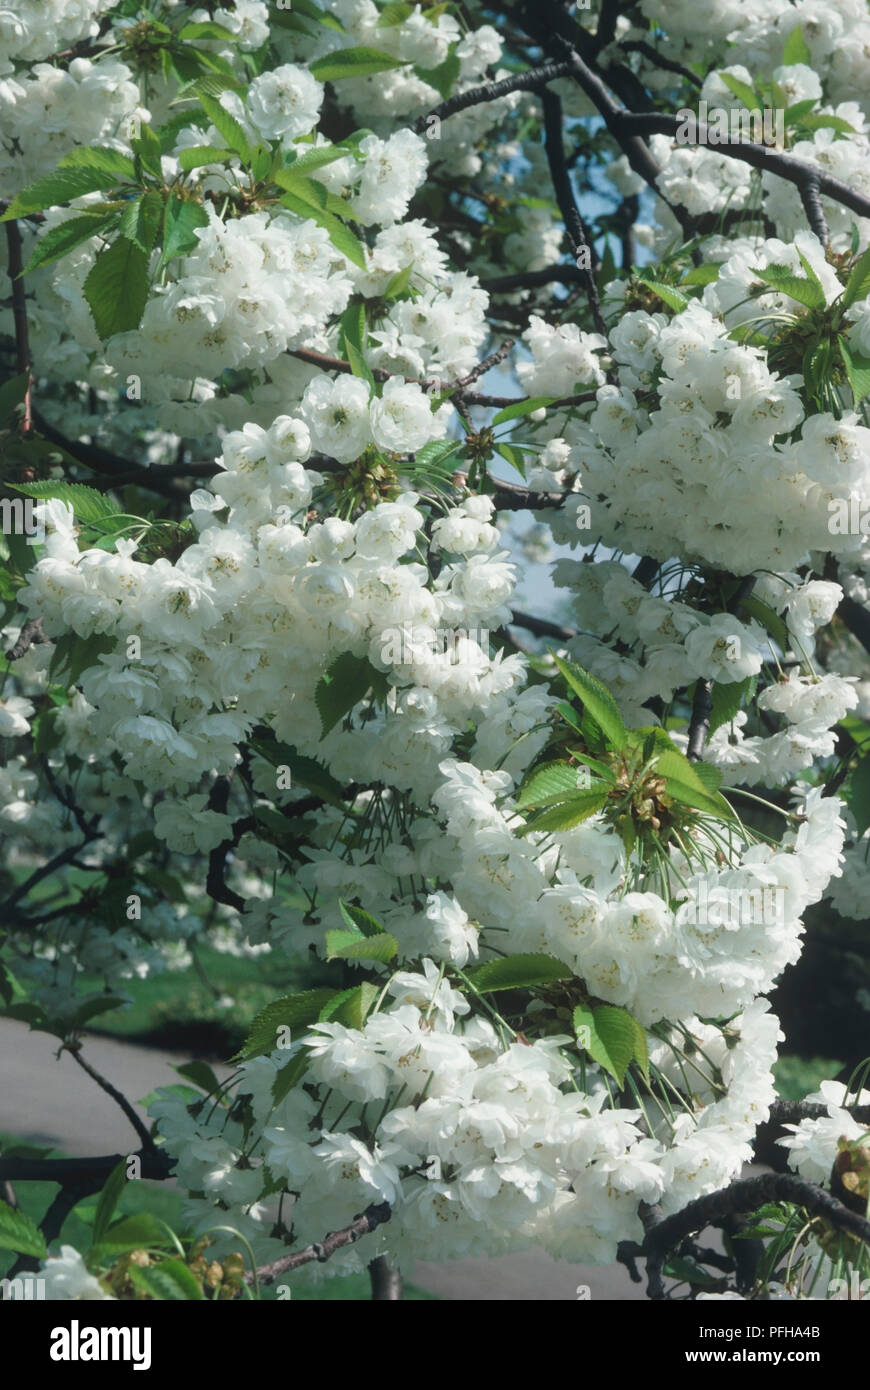 Prunus avium 'Plena' (Gean, Wild Cherry), Überfluß an weiße Blüten am Baum Stockfoto